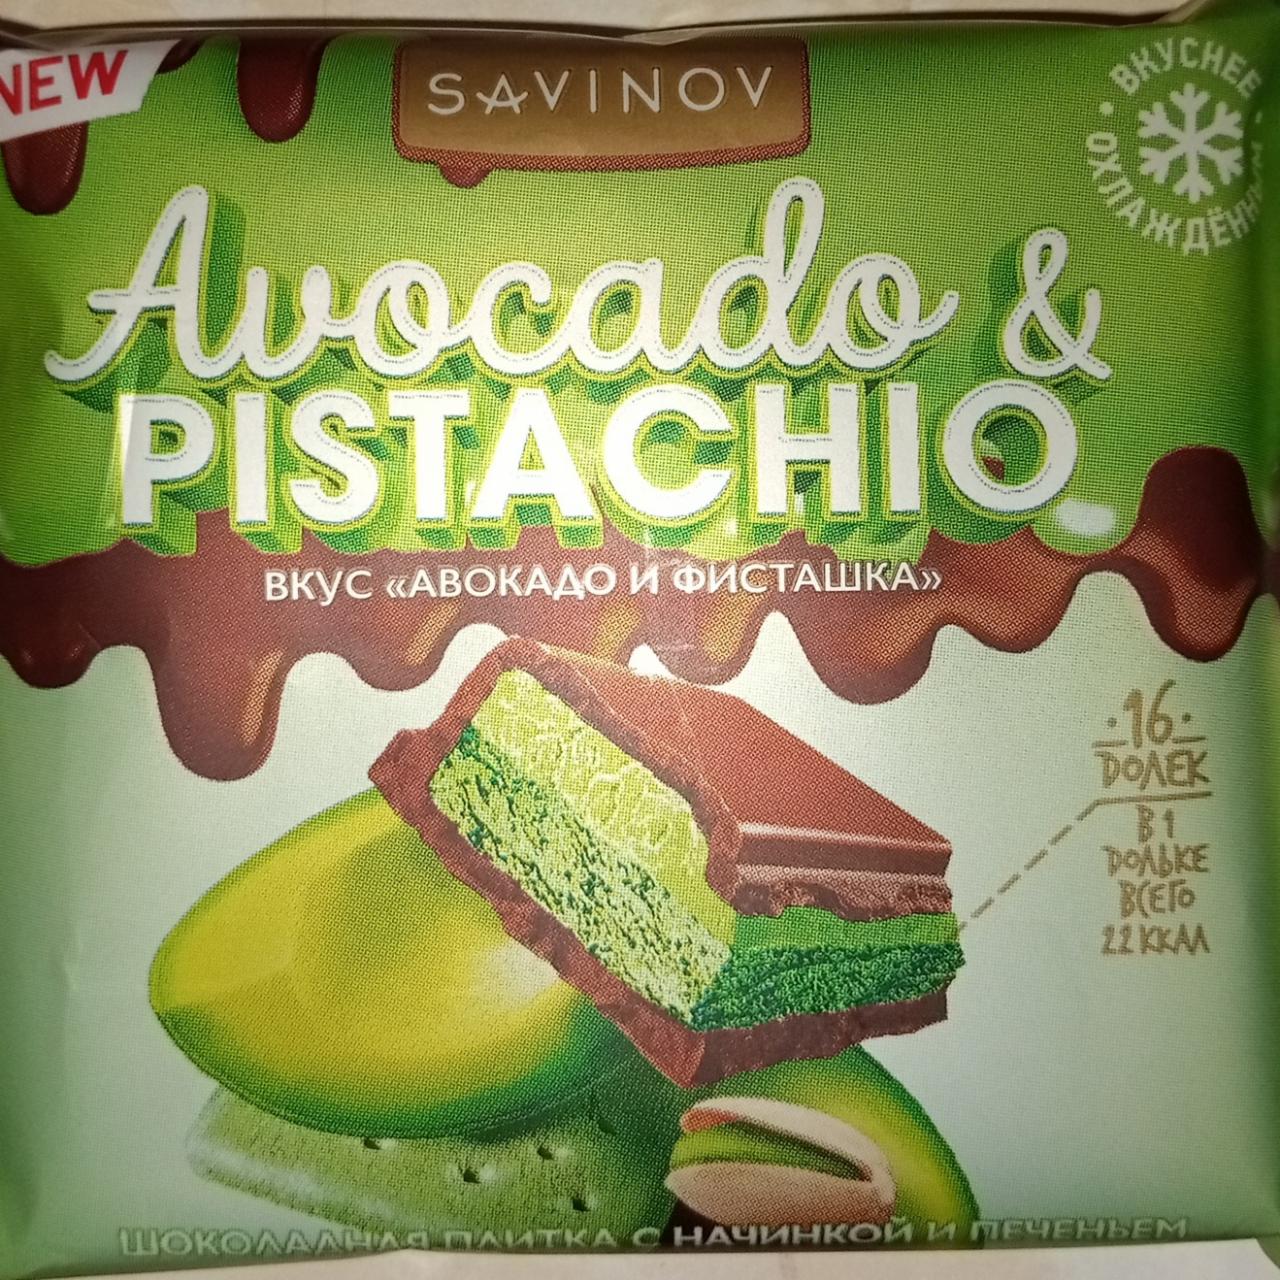 Фото - Шоколад молочный с печеньем и начинкой Avokado&pistachio Savinov